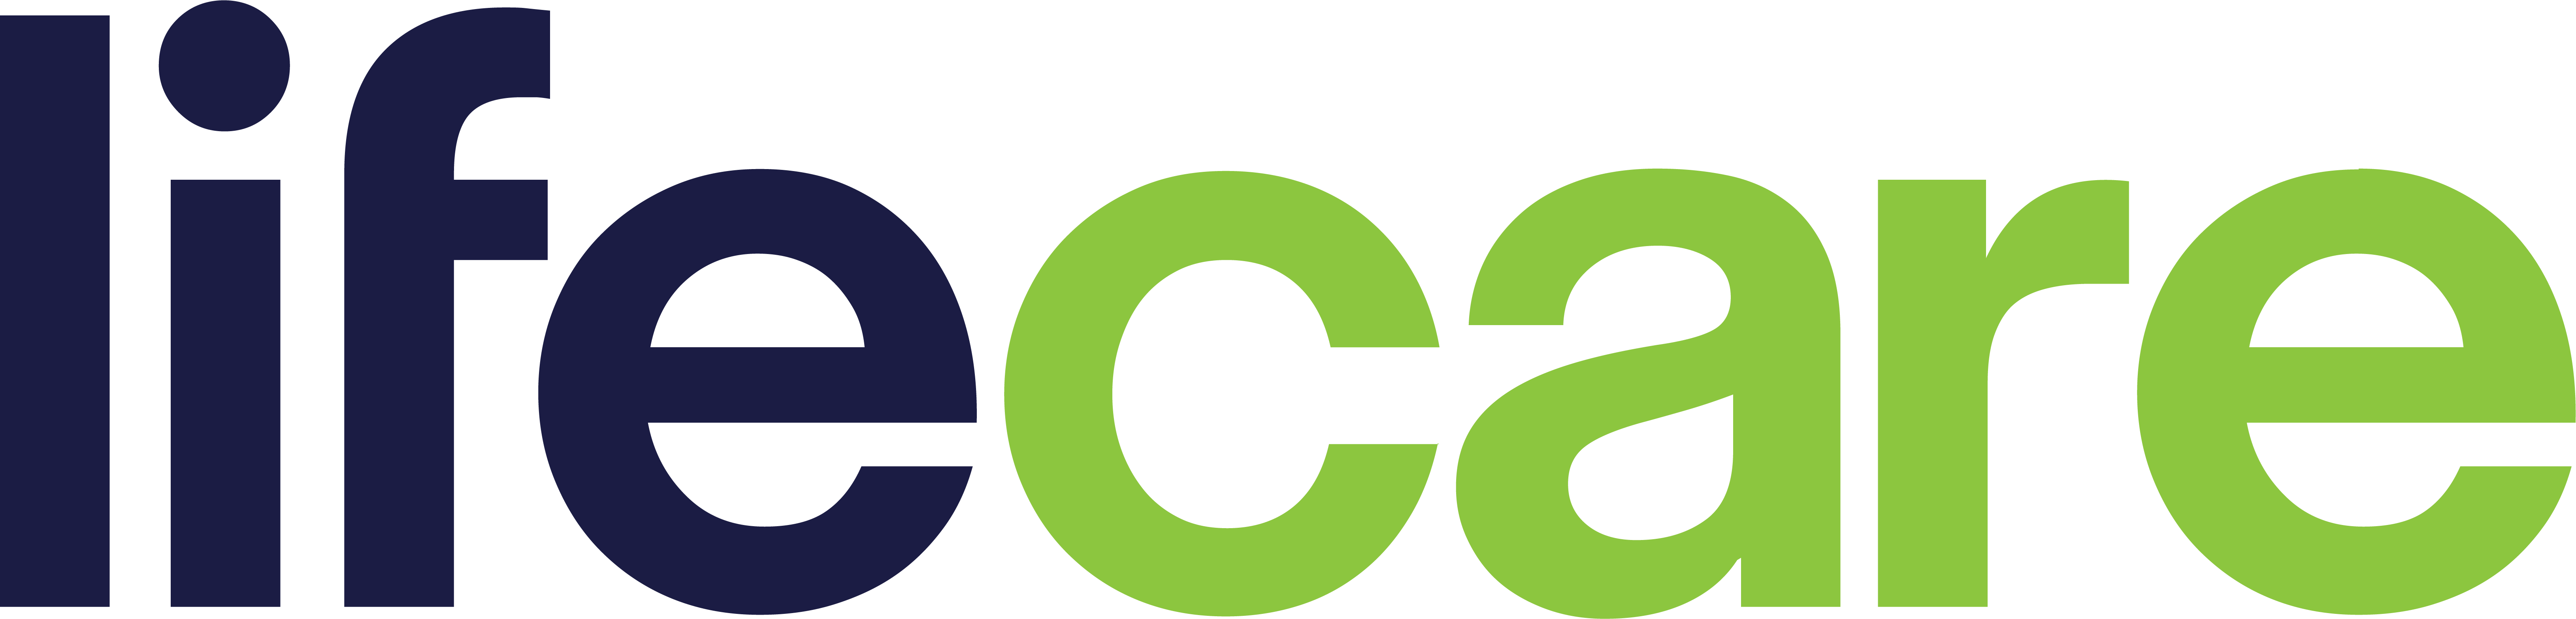 lc-logo-v2